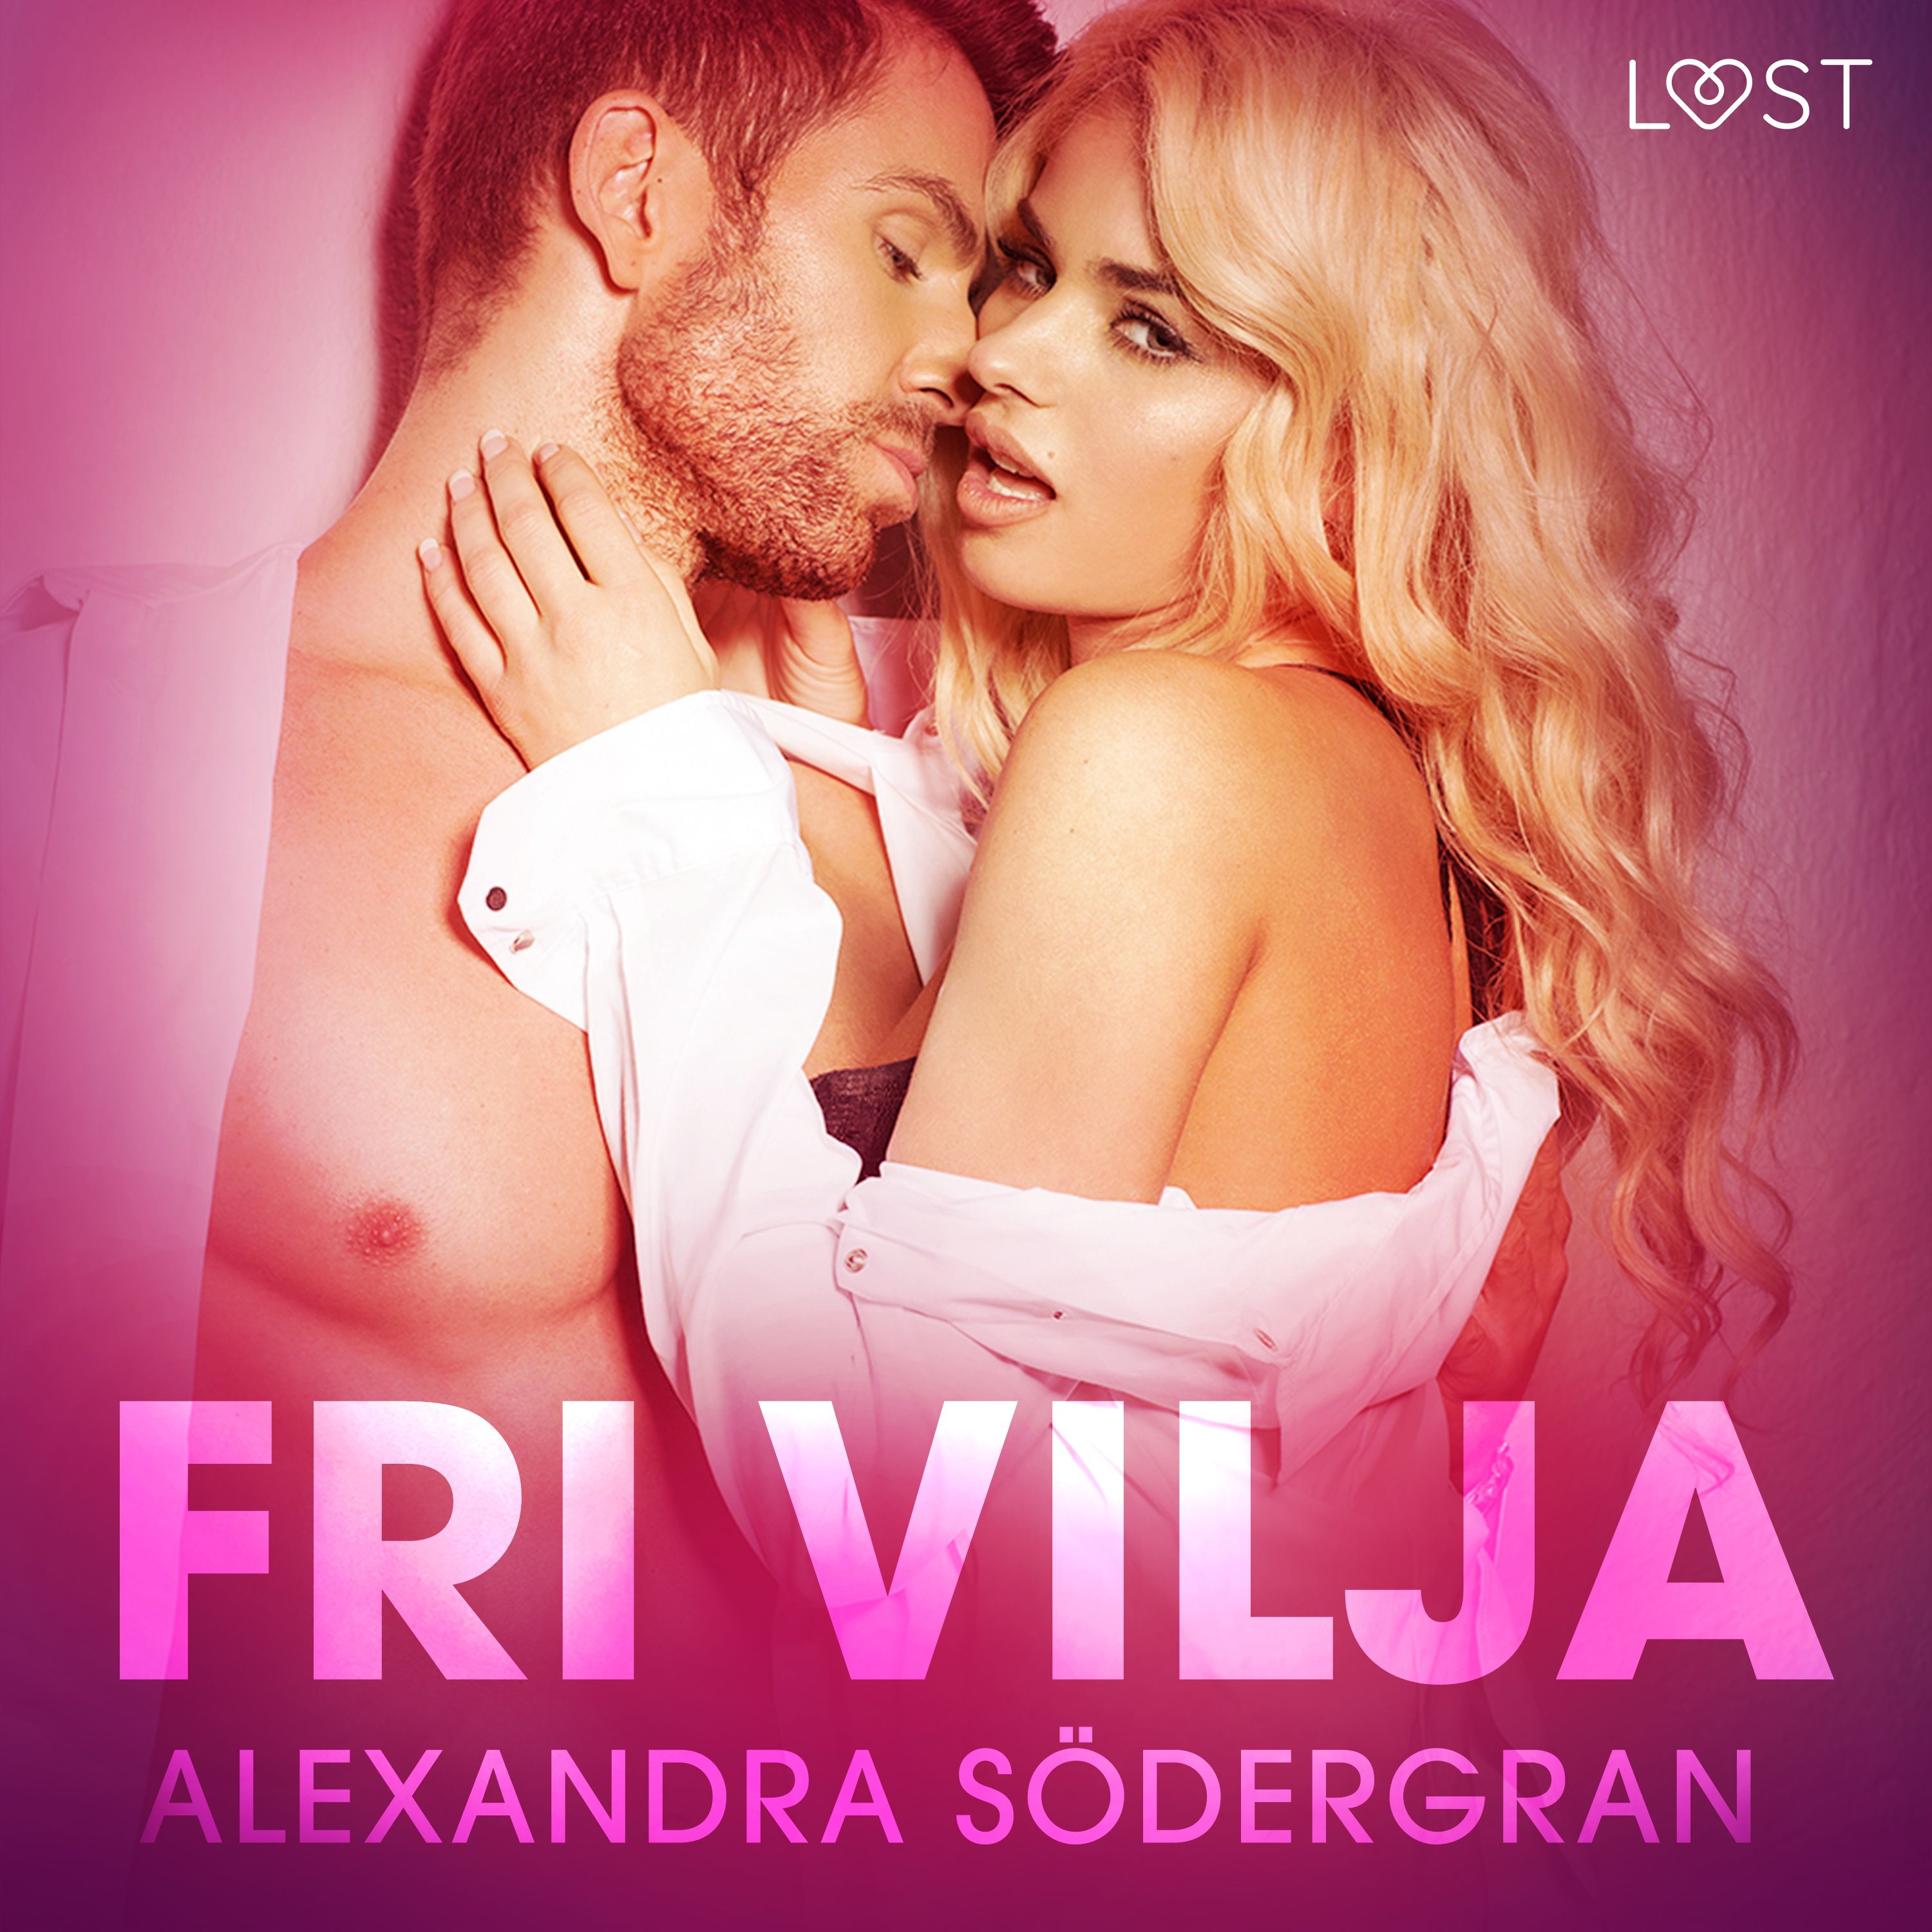 Fri vilja - erotisk novell, ljudbok av Alexandra Södergran